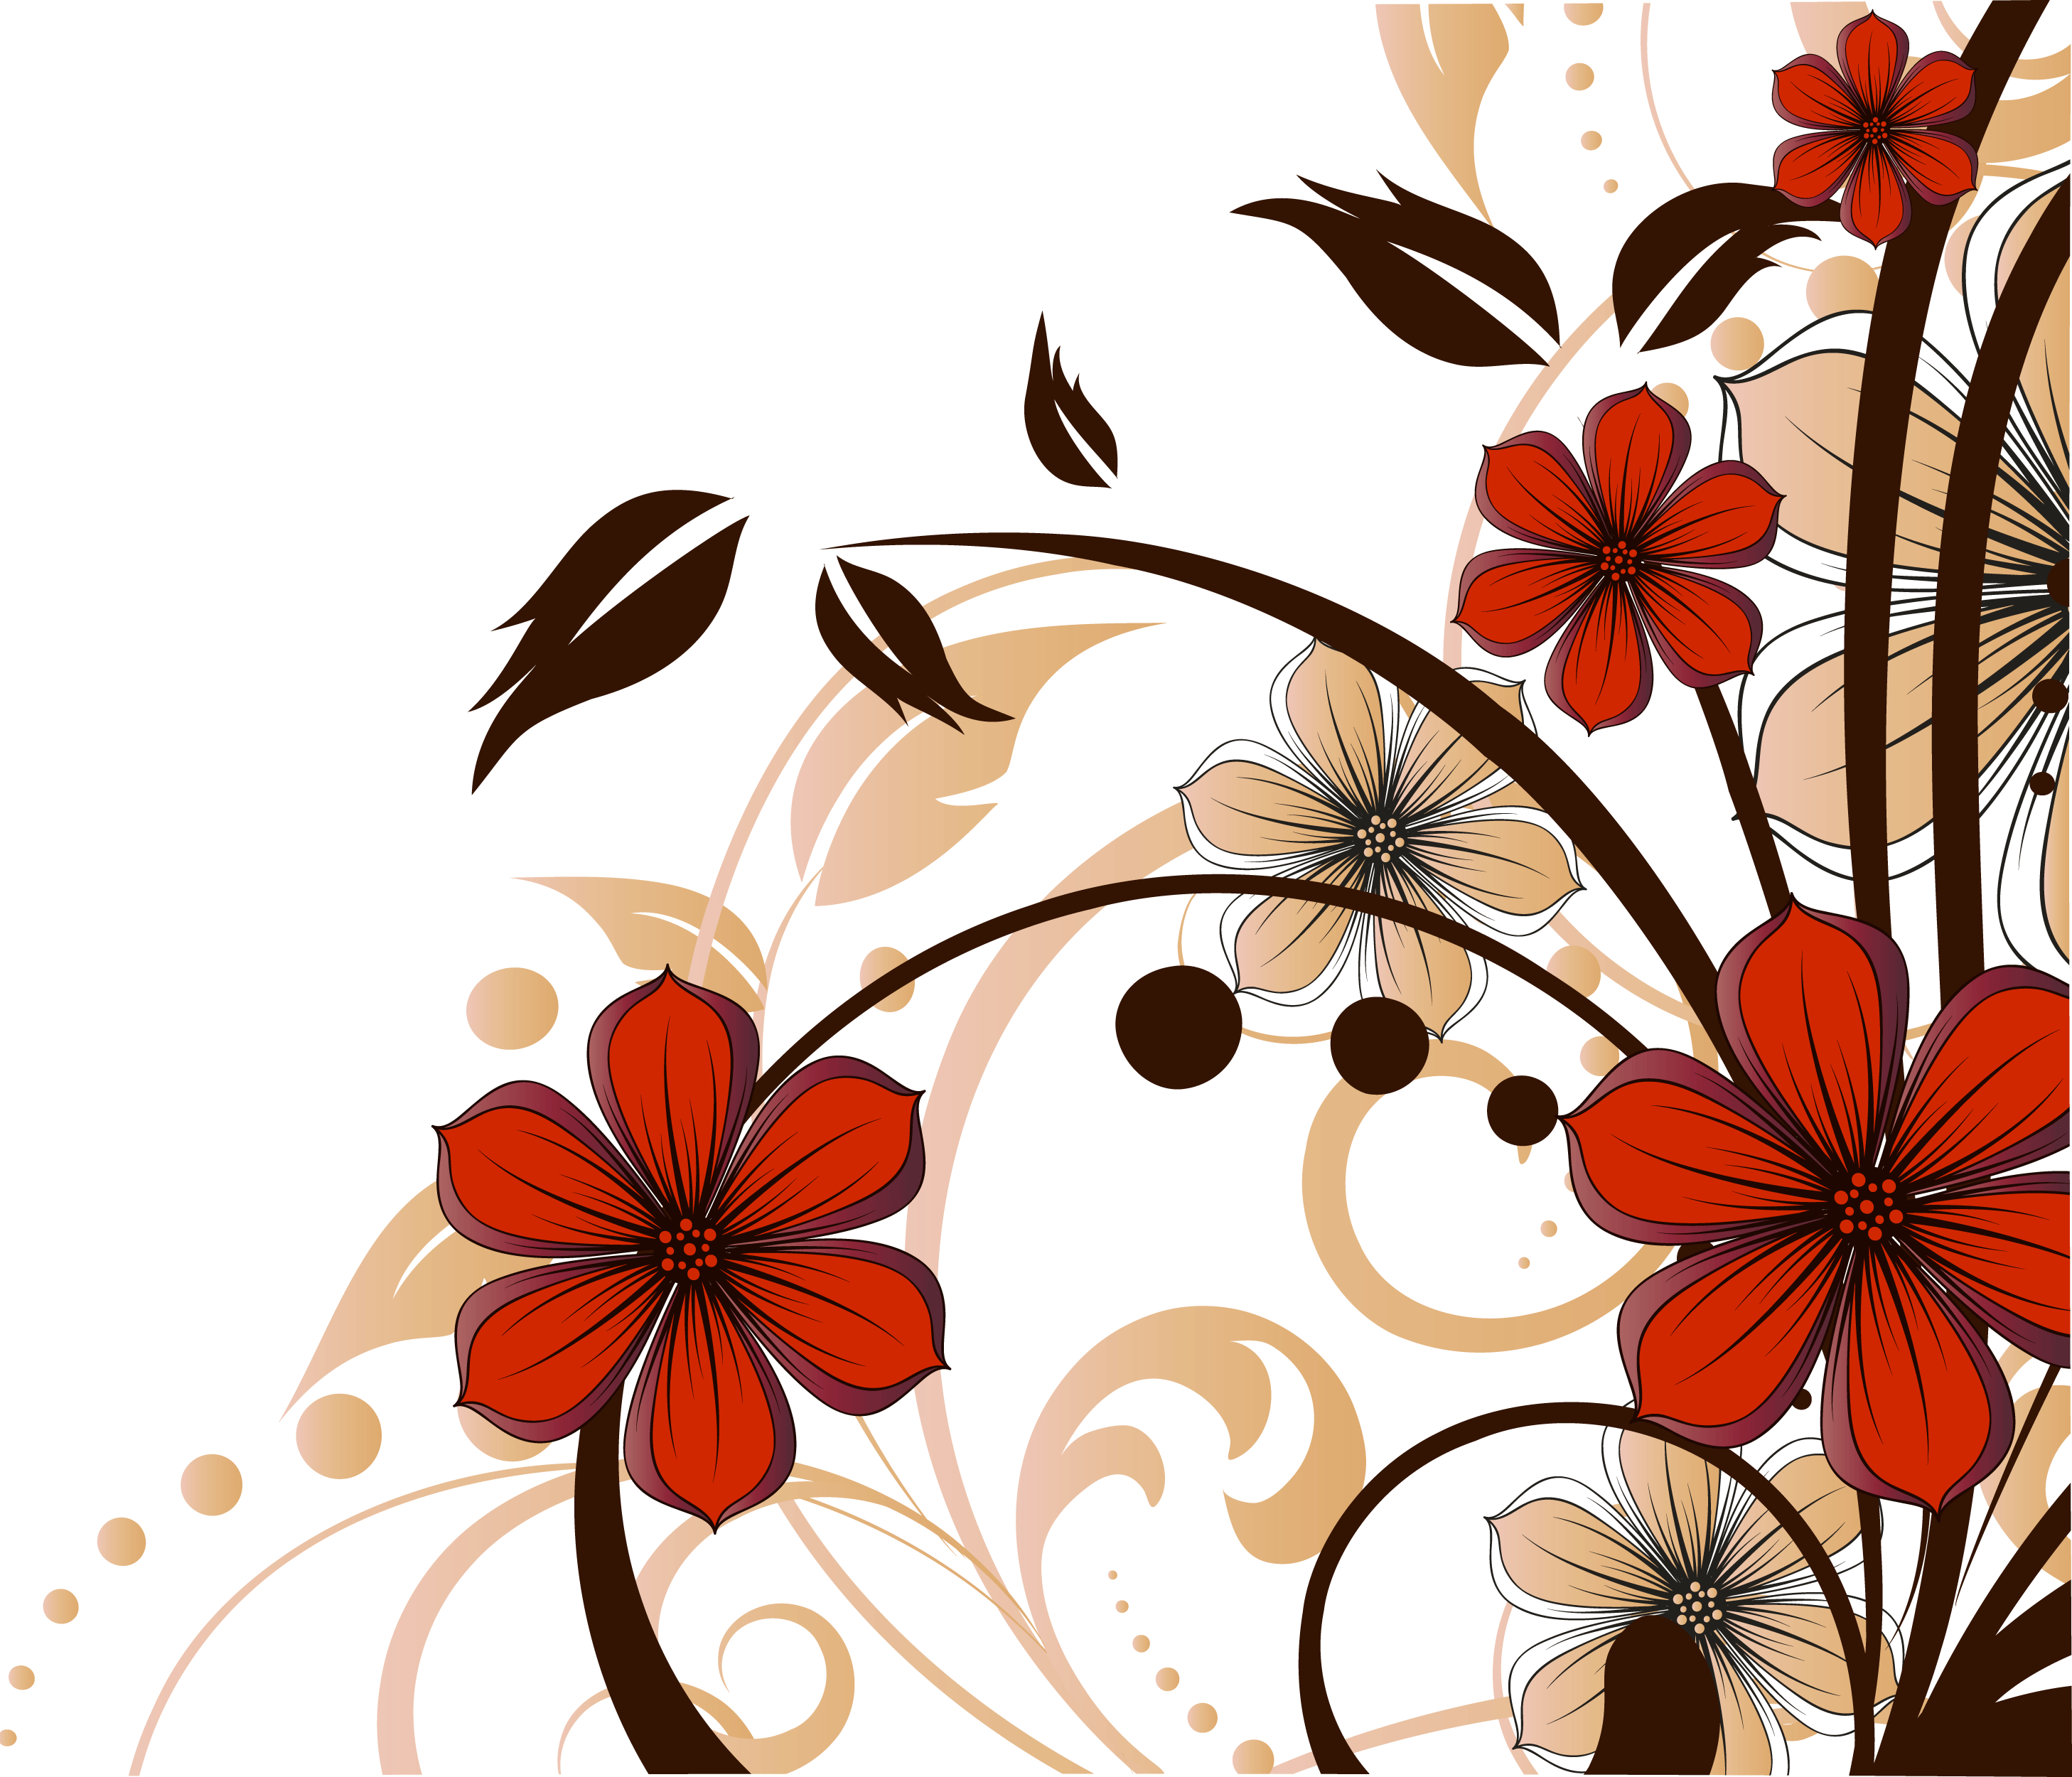 花のイラスト フリー素材 壁紙 背景no 780 赤茶黒 曲線ライン